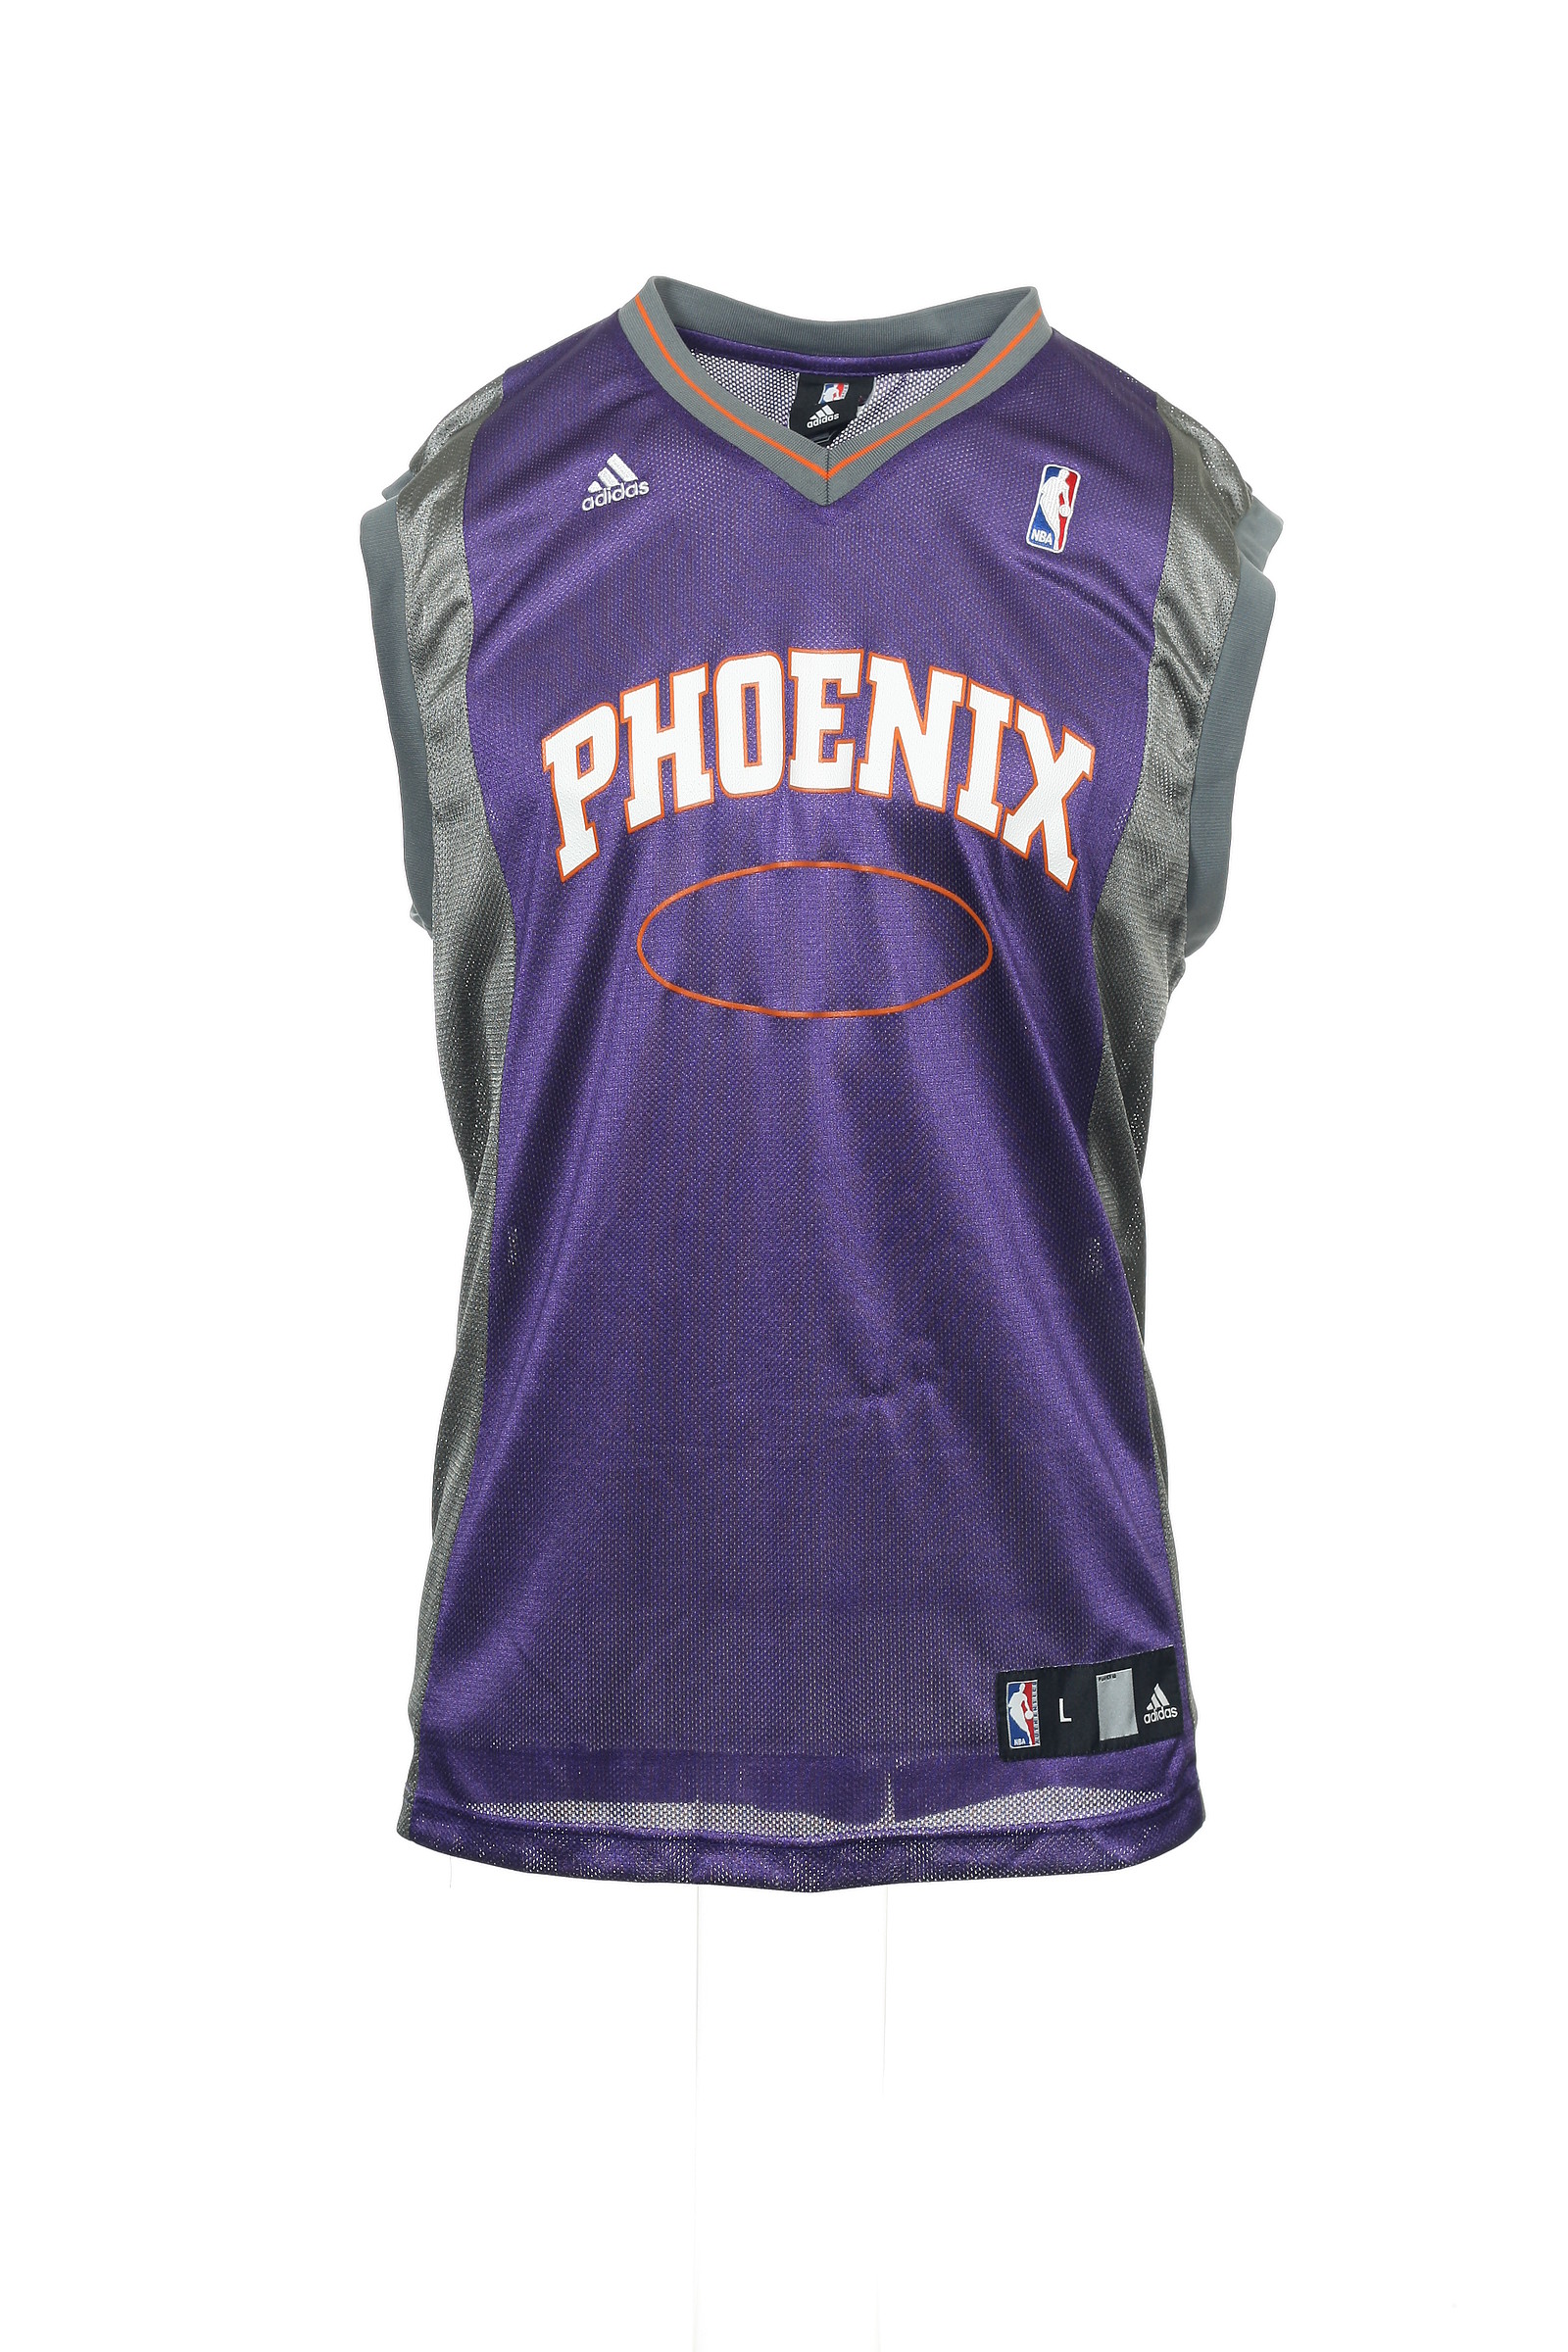 phoenix suns association jersey